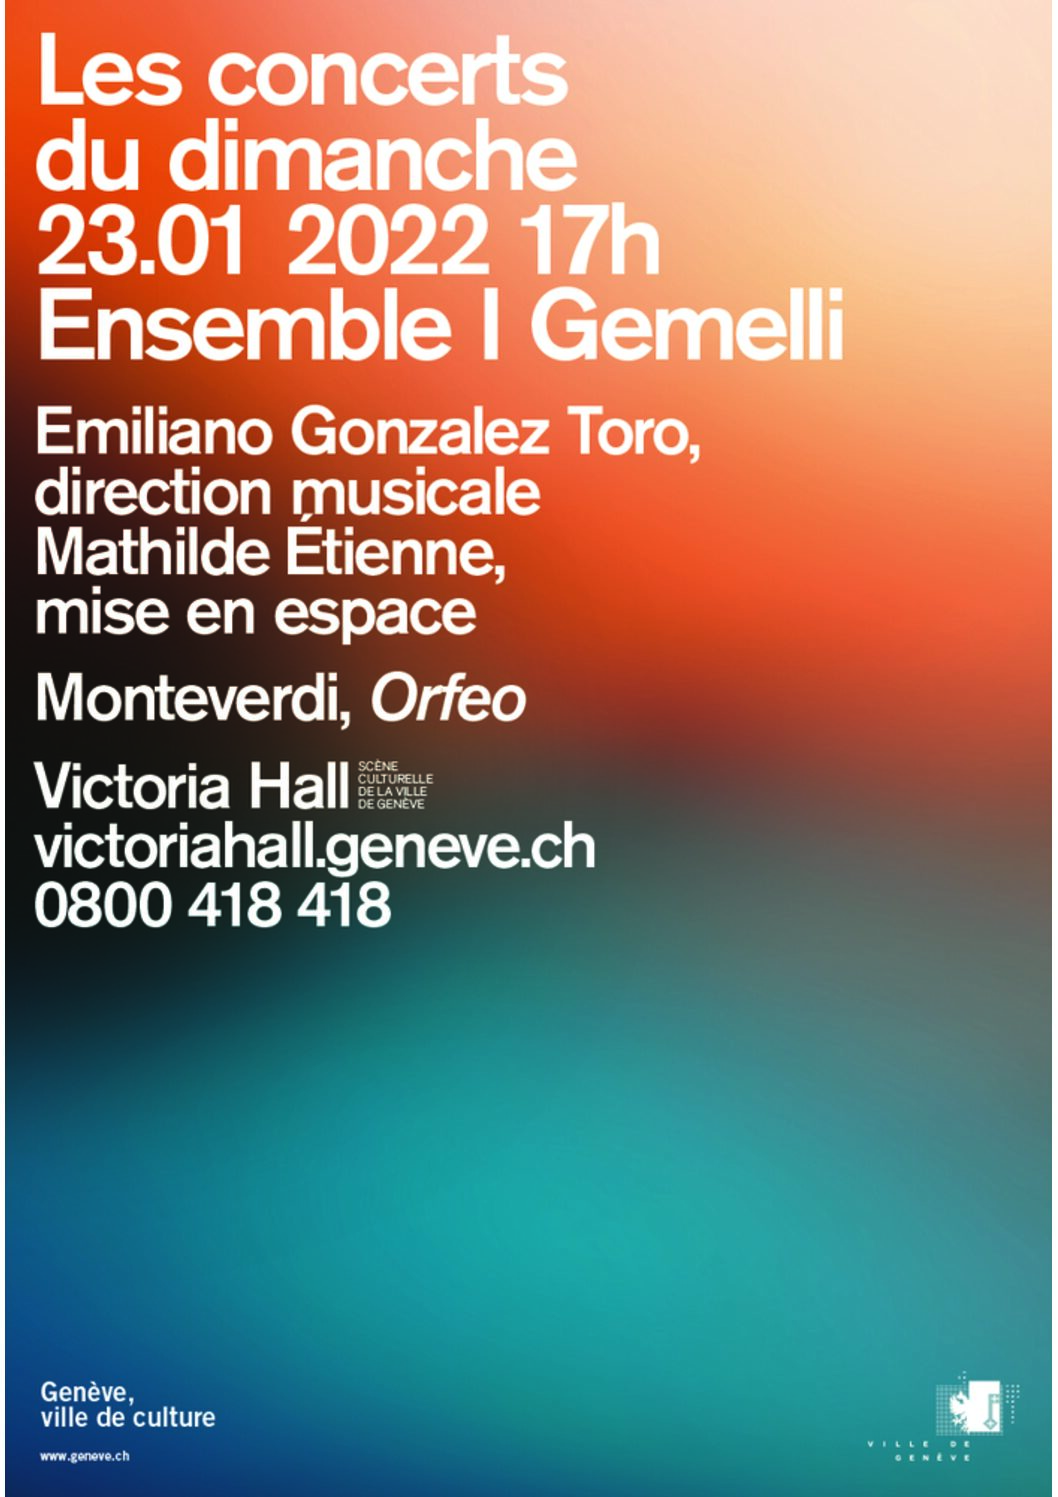 Monteverdi Interprété Par L’Ensemble I Gemmeli – Victoria Hall, 23.01.2022, 17h00.